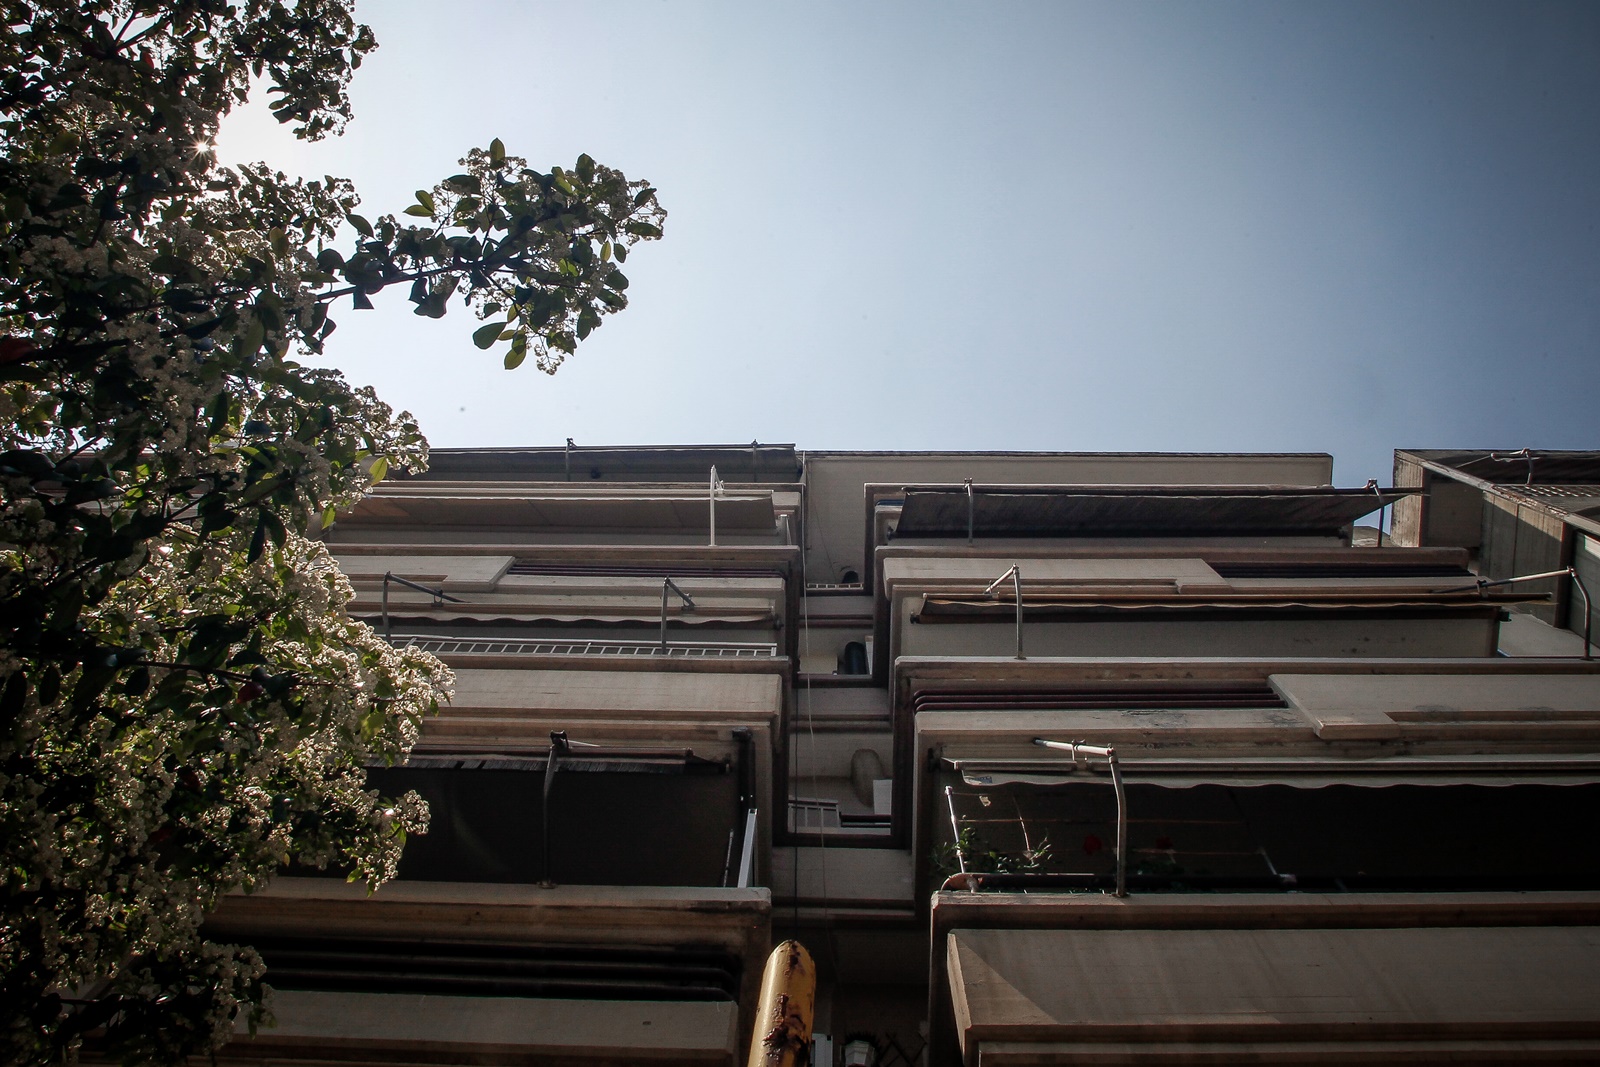 Γλυφάδα τραγωδία: Παιδί 18 μηνών έπεσε από 4ο όροφο πολυκατοικίας